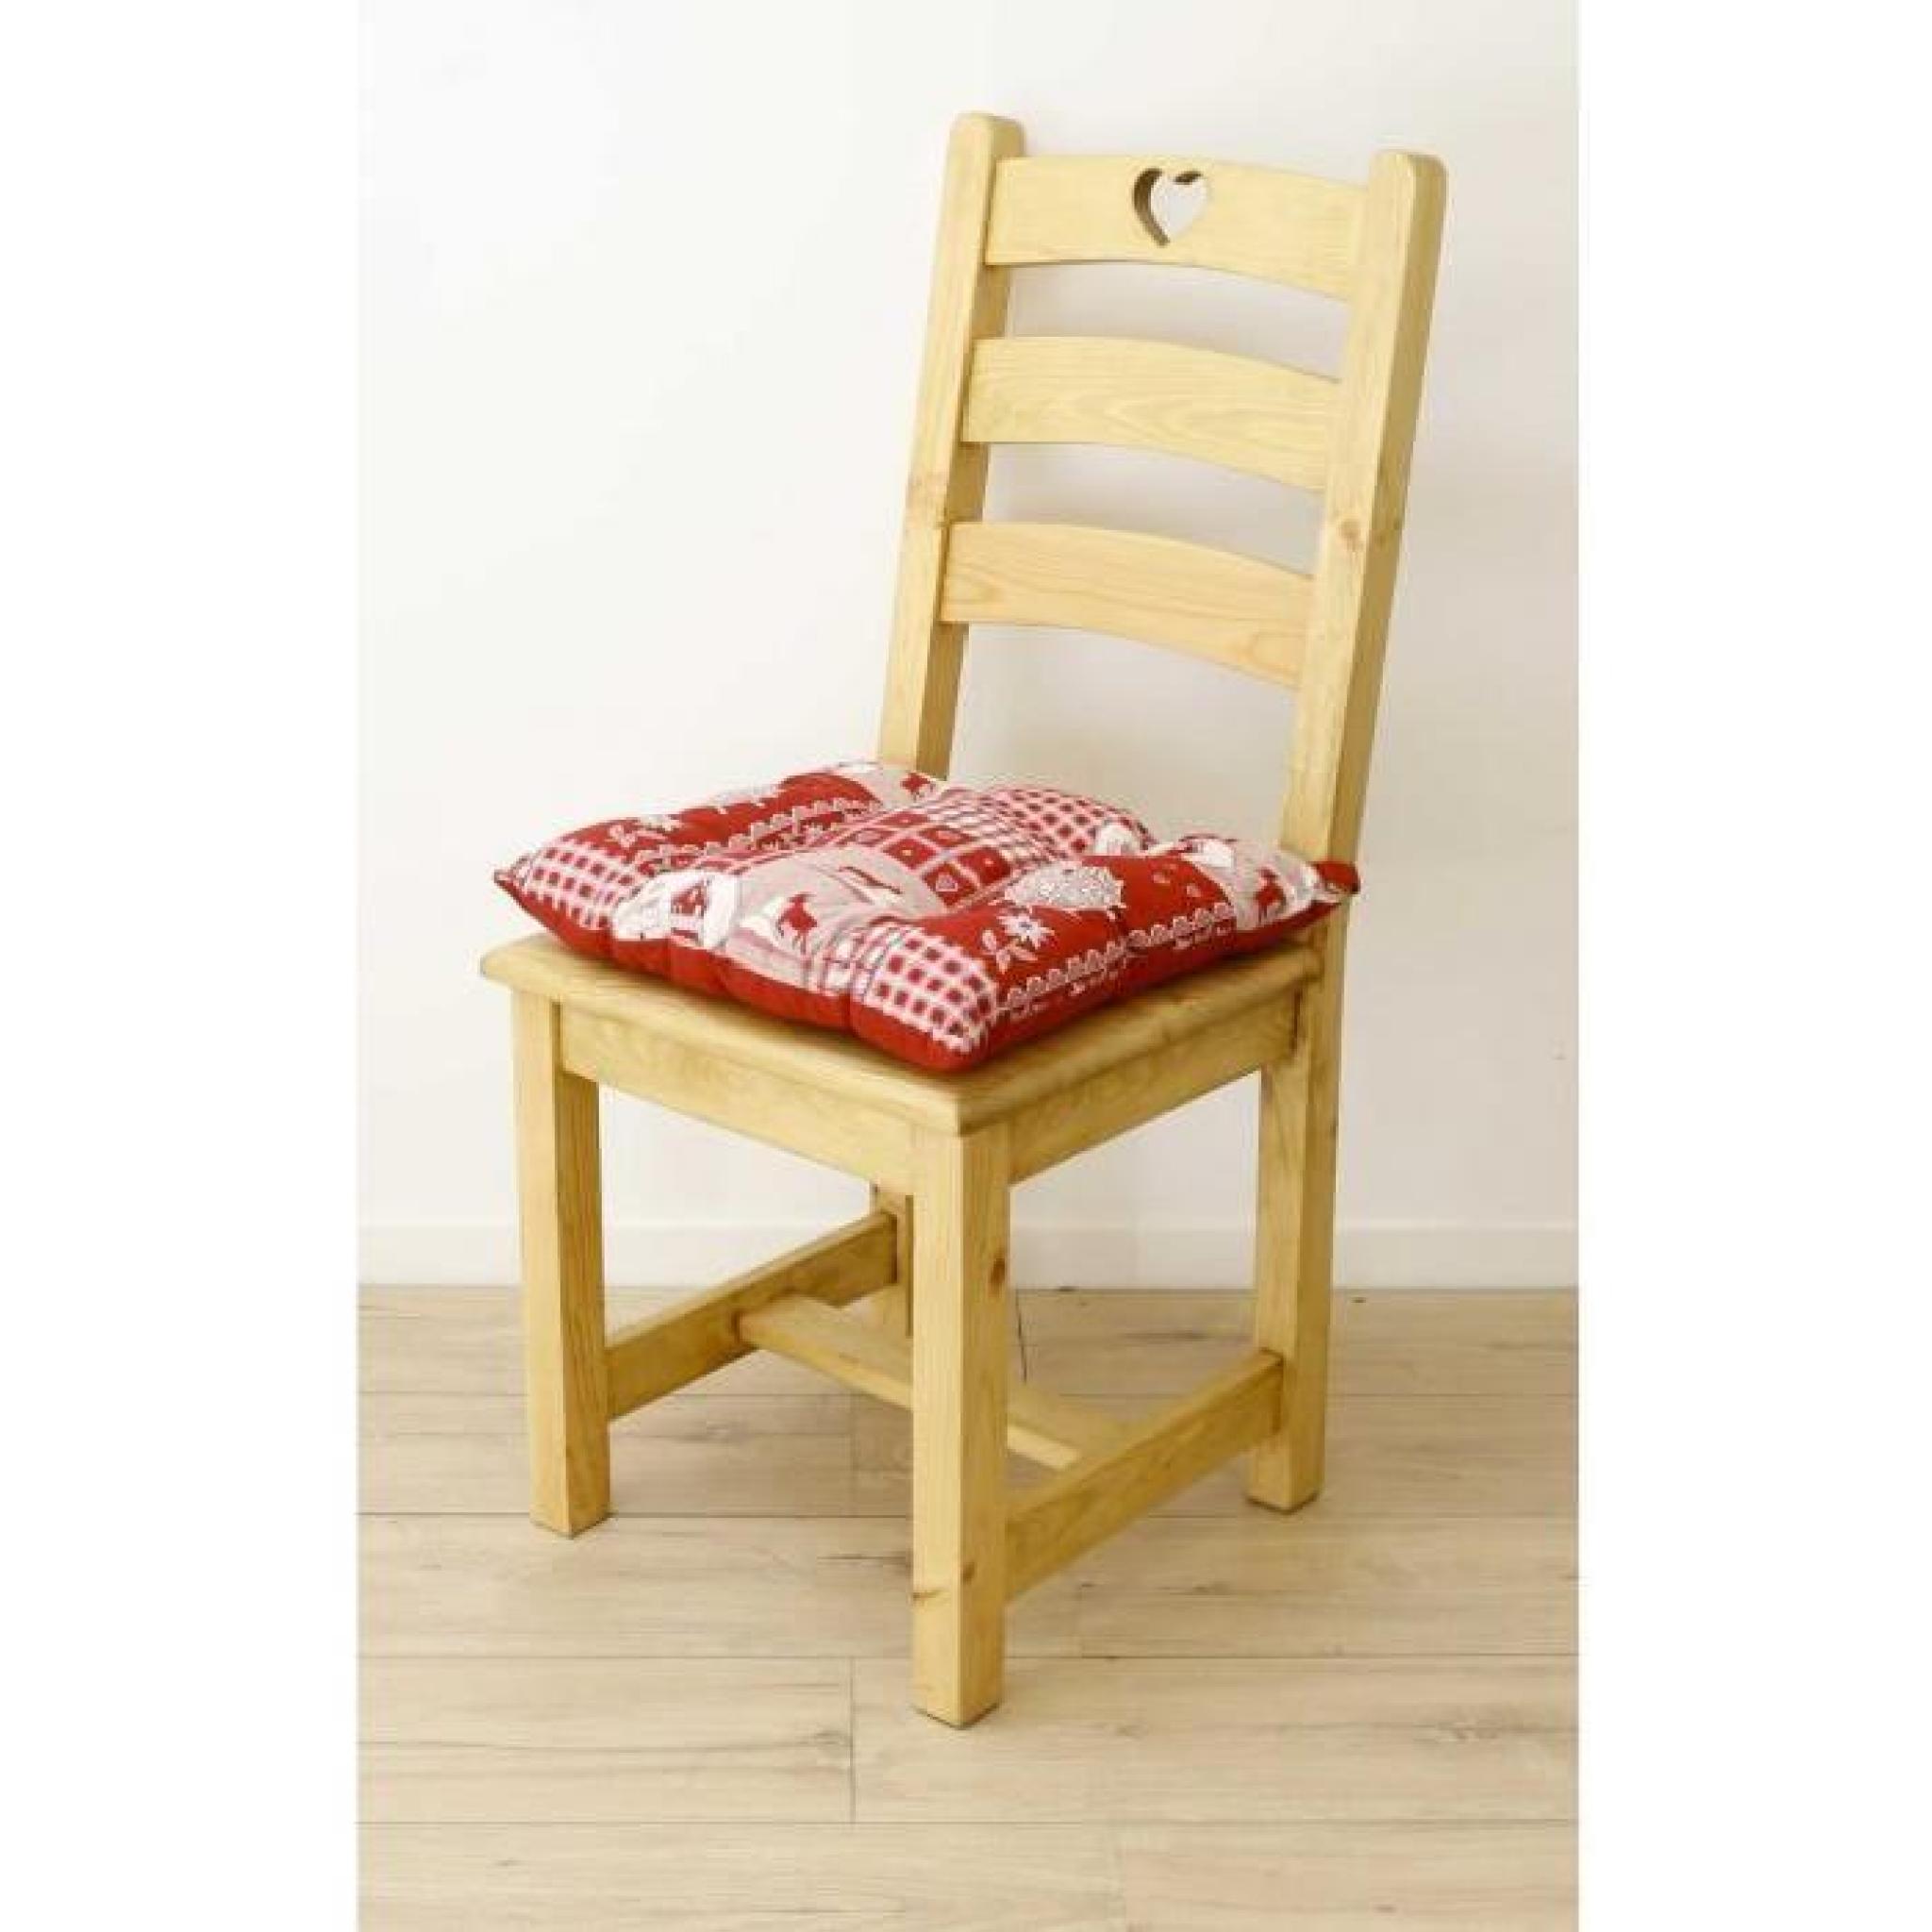 Galette de chaise style montagne Cervino rouge Aspin pas cher